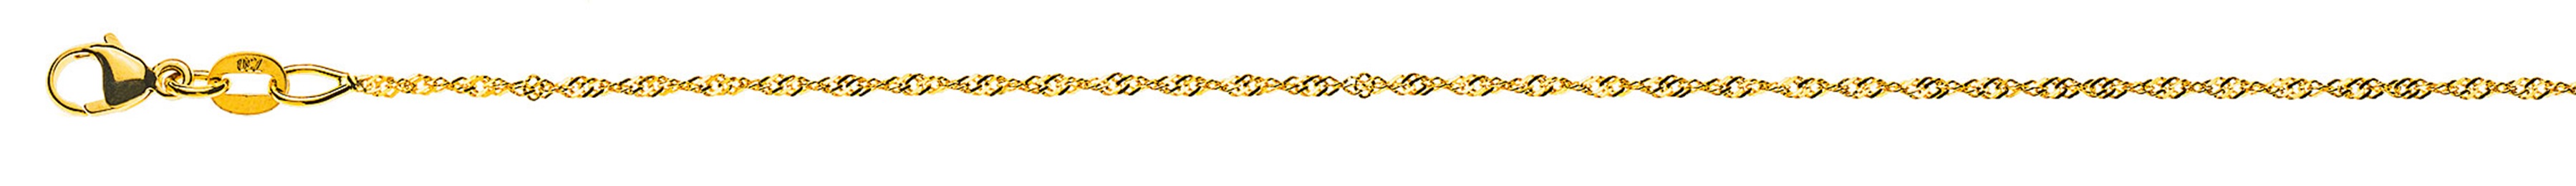 AURONOS Prestige Necklace Yellow Gold 18K Singapore Chain 42cm 1.2mm